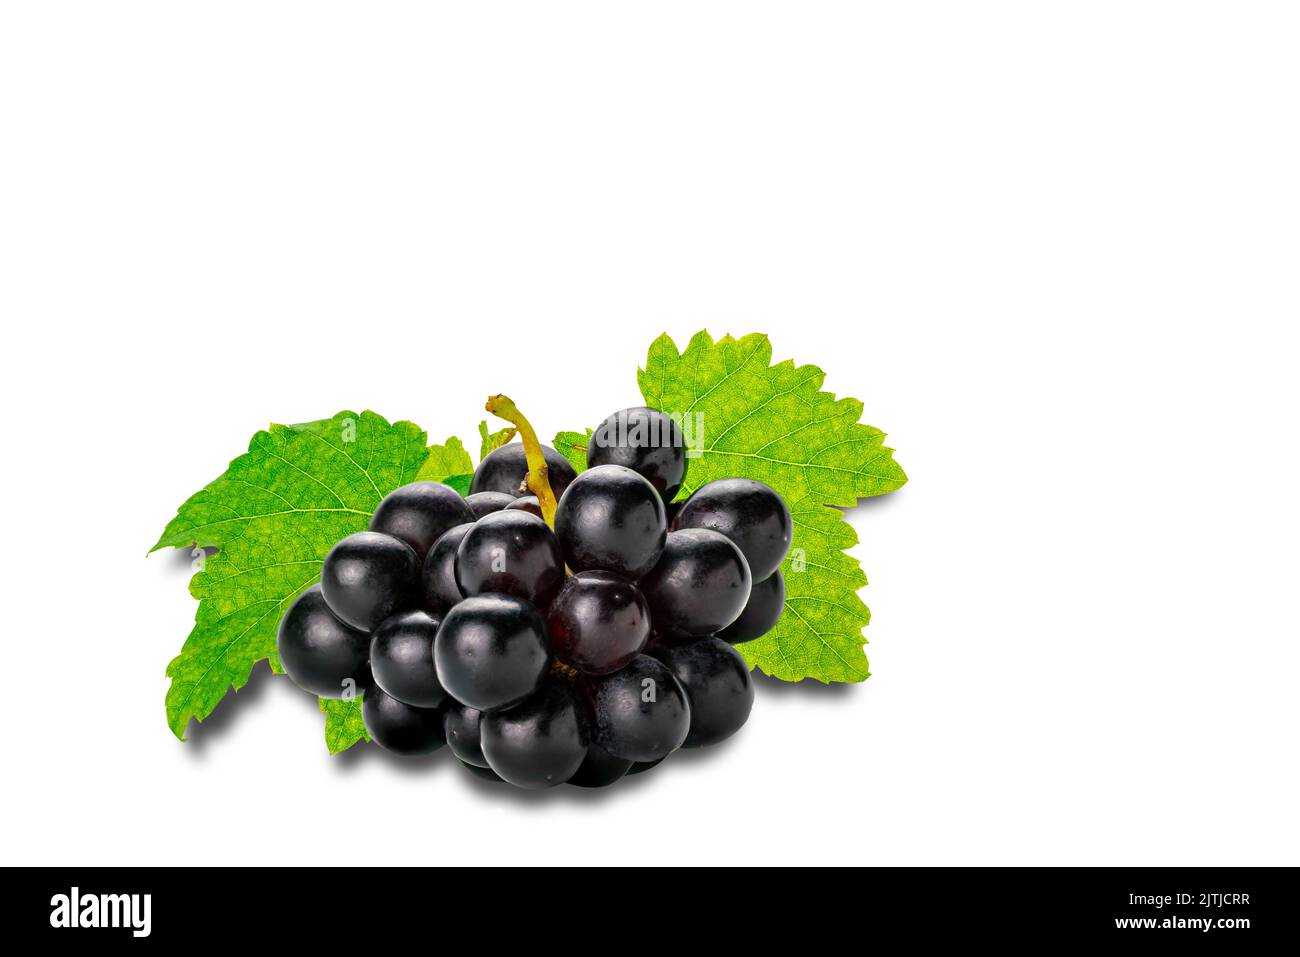 Racimo de uvas maduras negras con hojas verdes aisladas sobre fondo blanco con ruta de corte. Foto de stock